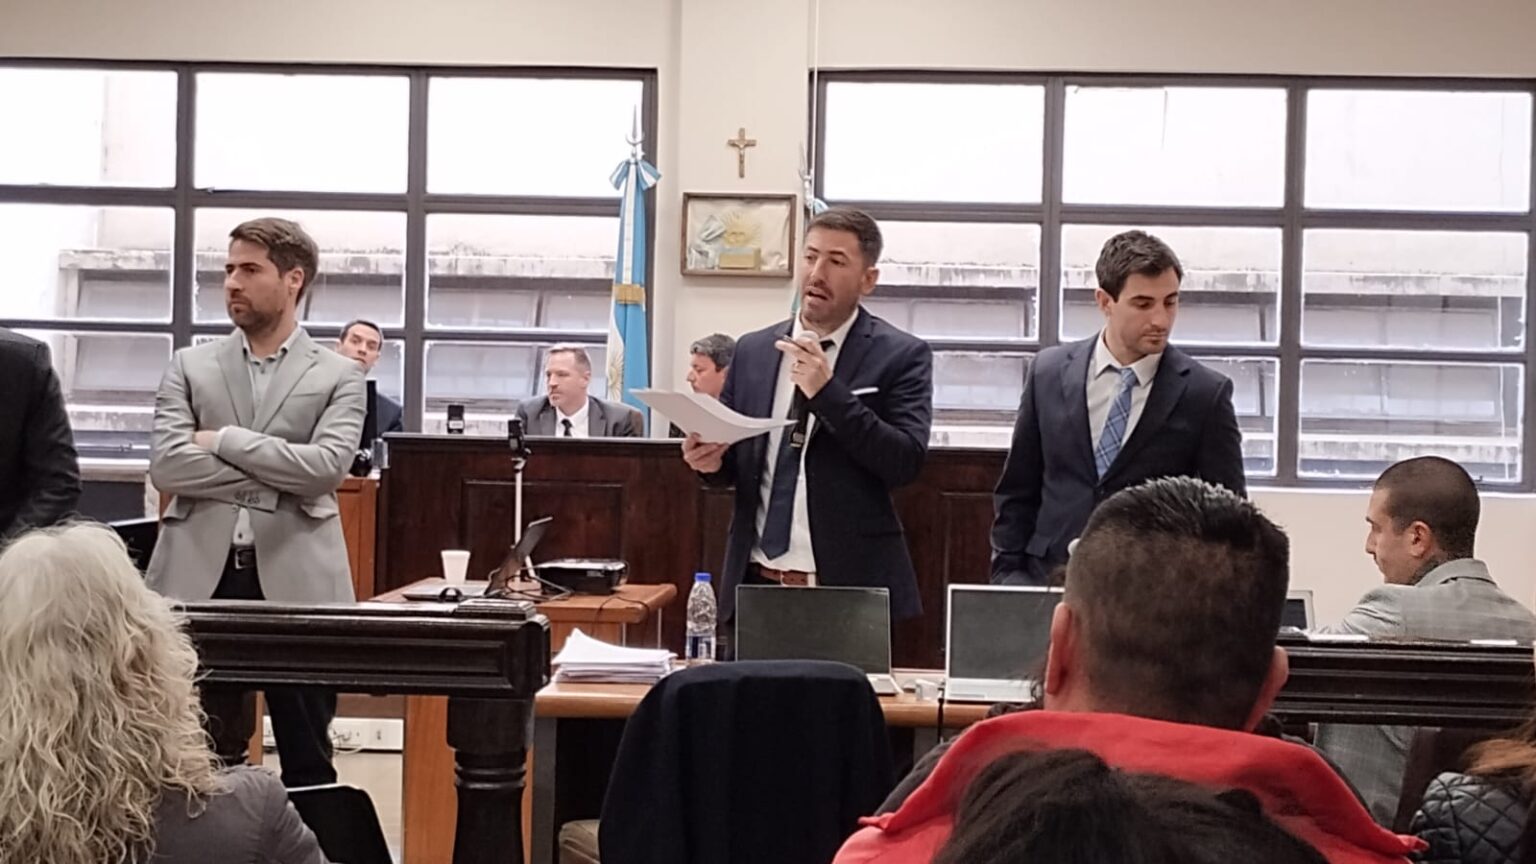 Juicio por Jurados en Quilmes: por unanimidad declararon “No Culpable” a la penitenciaria Heinderlecht, acusada de la muerte de un interno en la cárcel de Florencio Varela